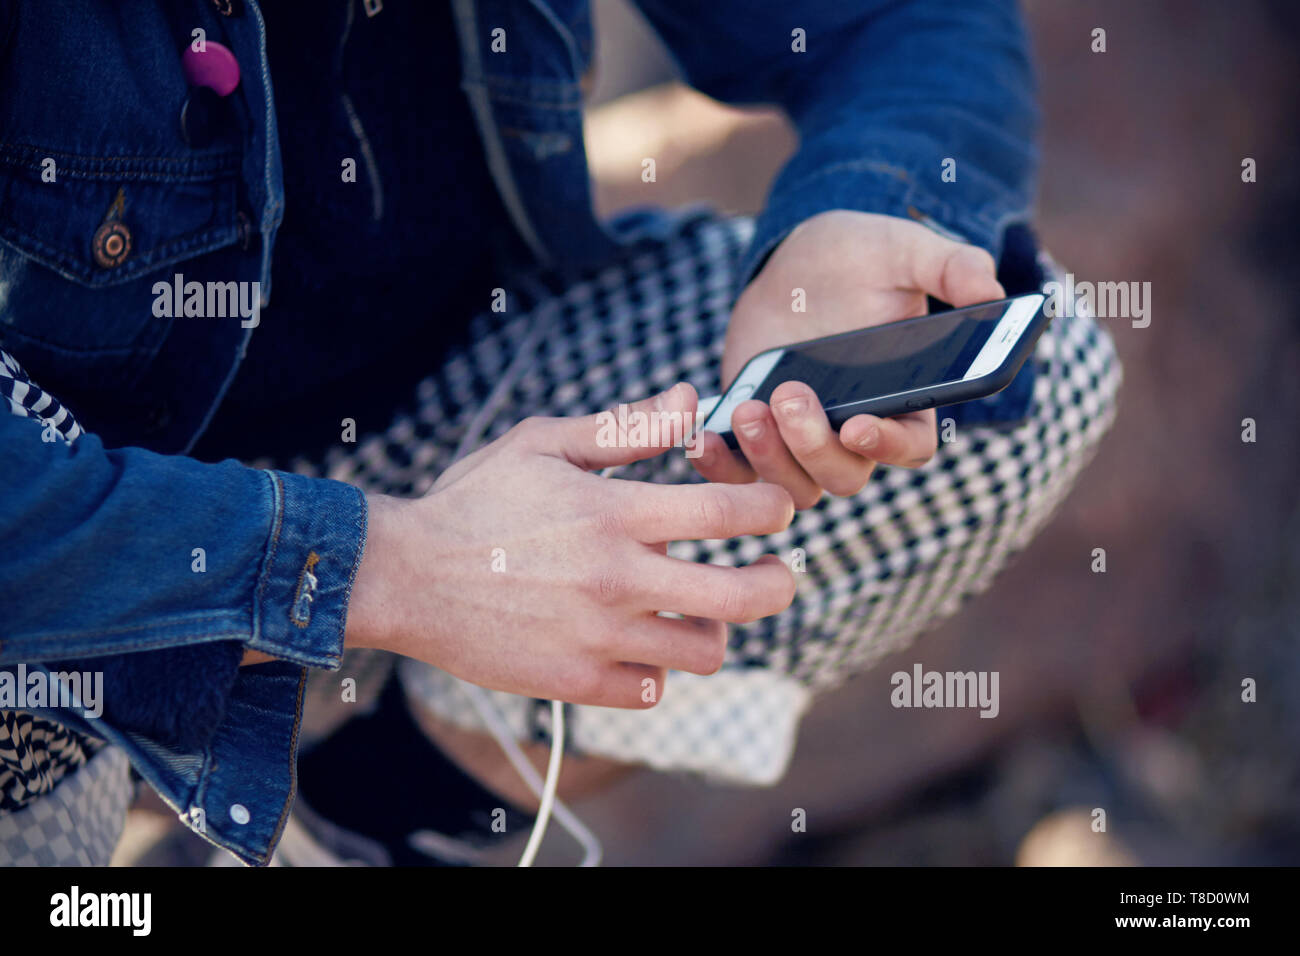 Moda vestidos adolescente sentado y sosteniendo un teléfono táctil, que se comunica en la red social Foto de stock